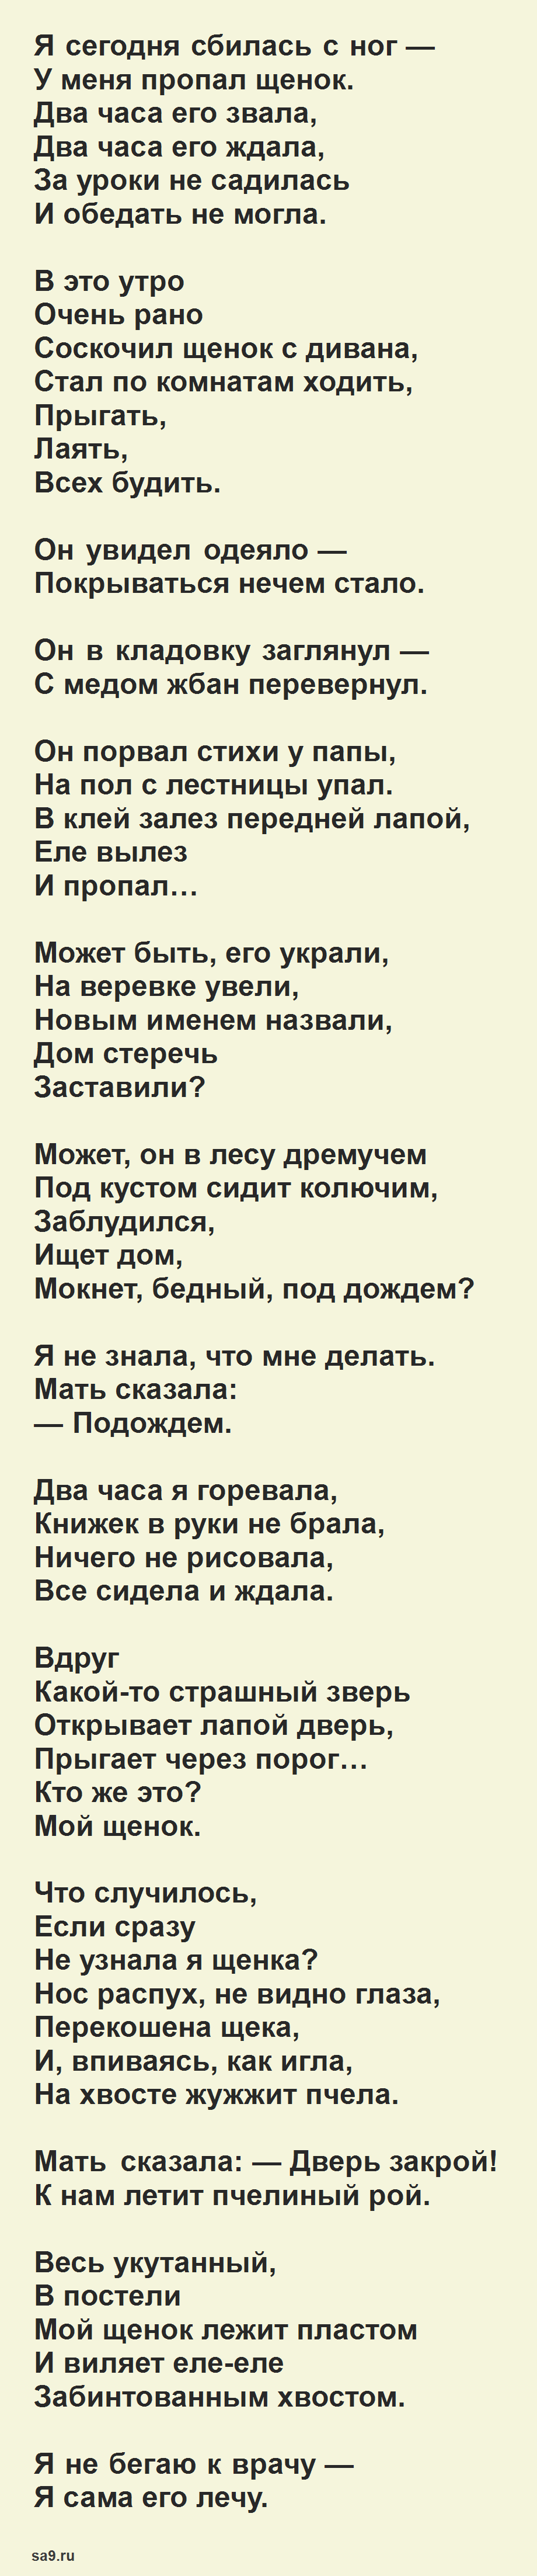 Стихи Сергея Михалкова - Мой щенок